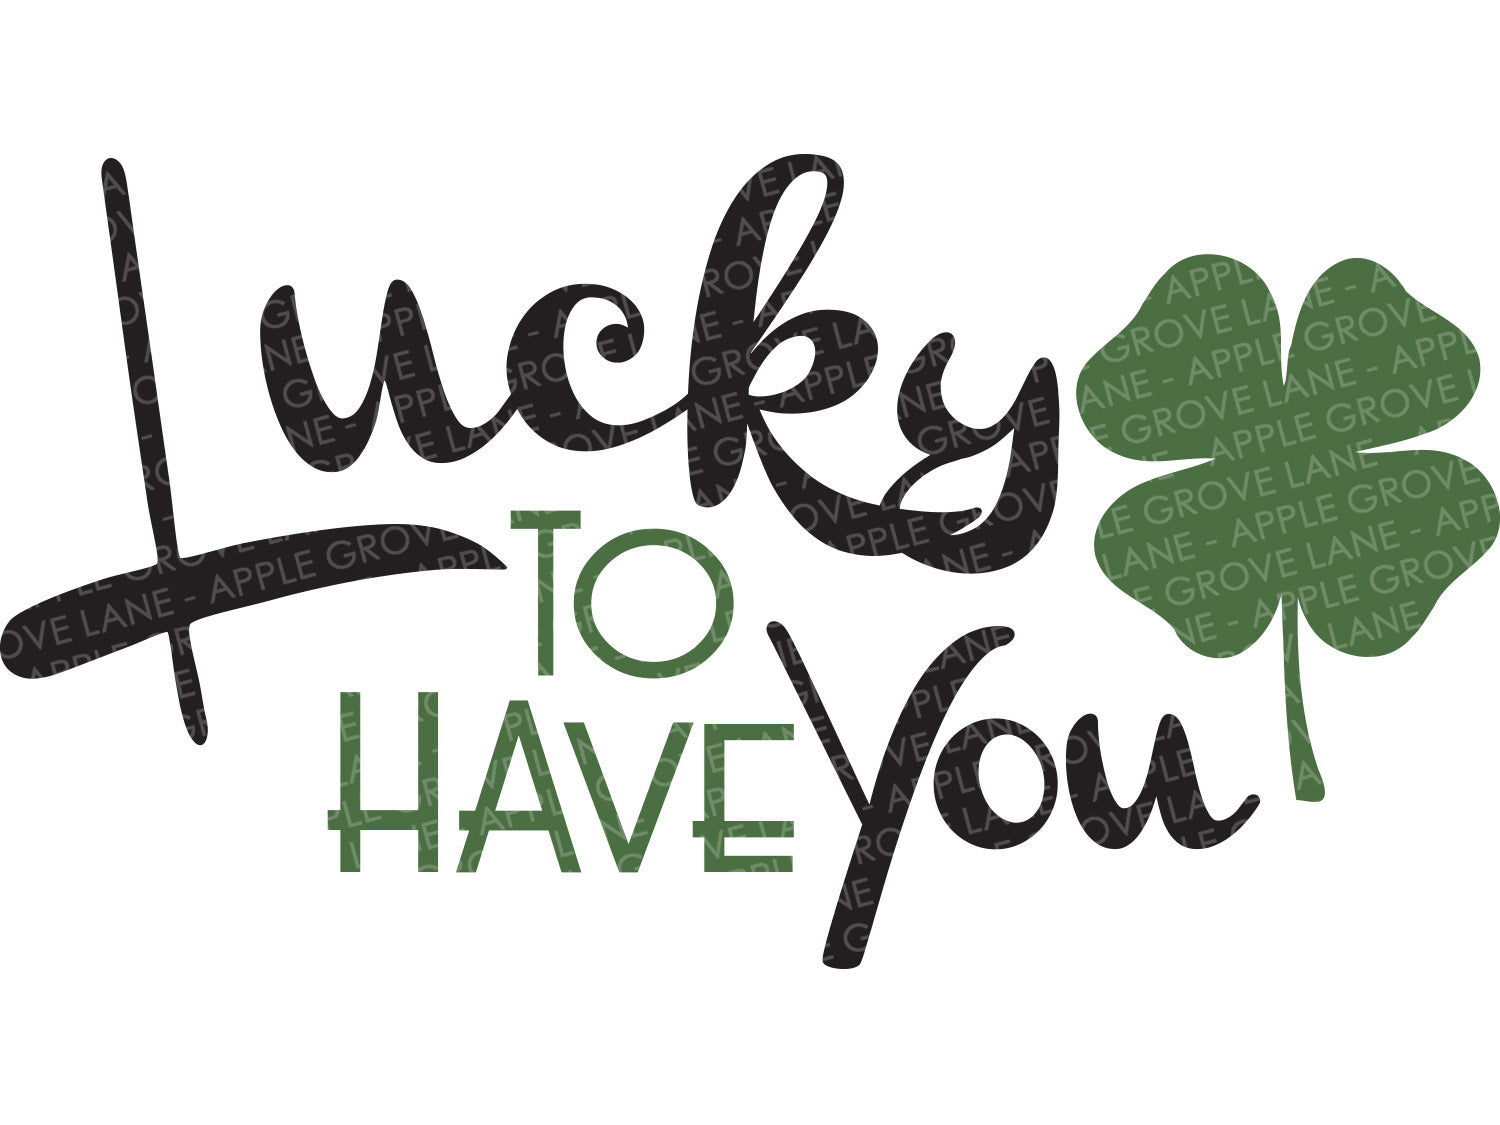 Lucky to Have You Svg - St Patricks Svg - St Patrick's Day Svg - Lucky Svg - St Patrick Svg - Kids St Patricks Svg